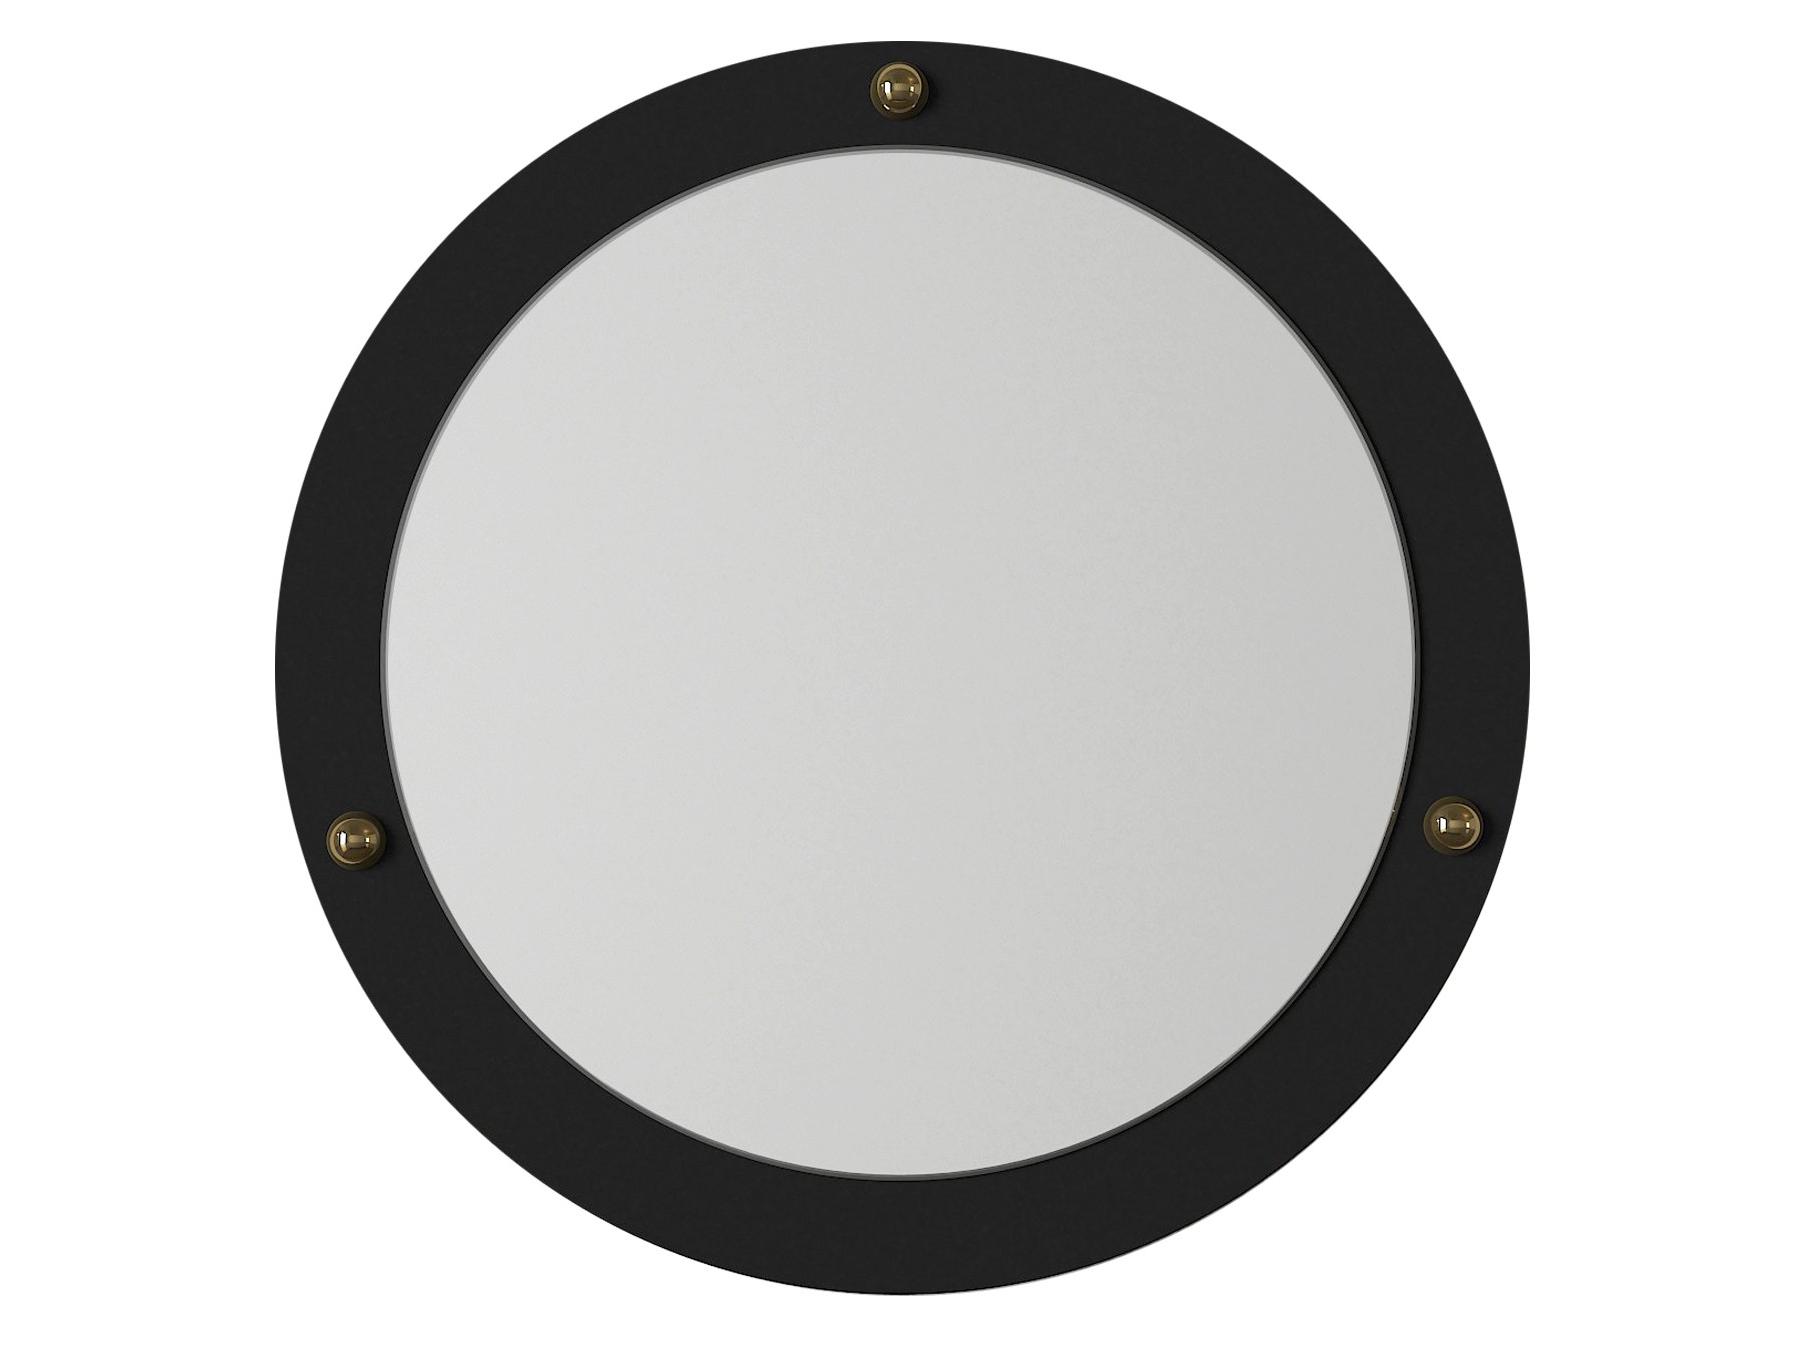  Dekorativní zrcadlo Bipipe 1 (černá)